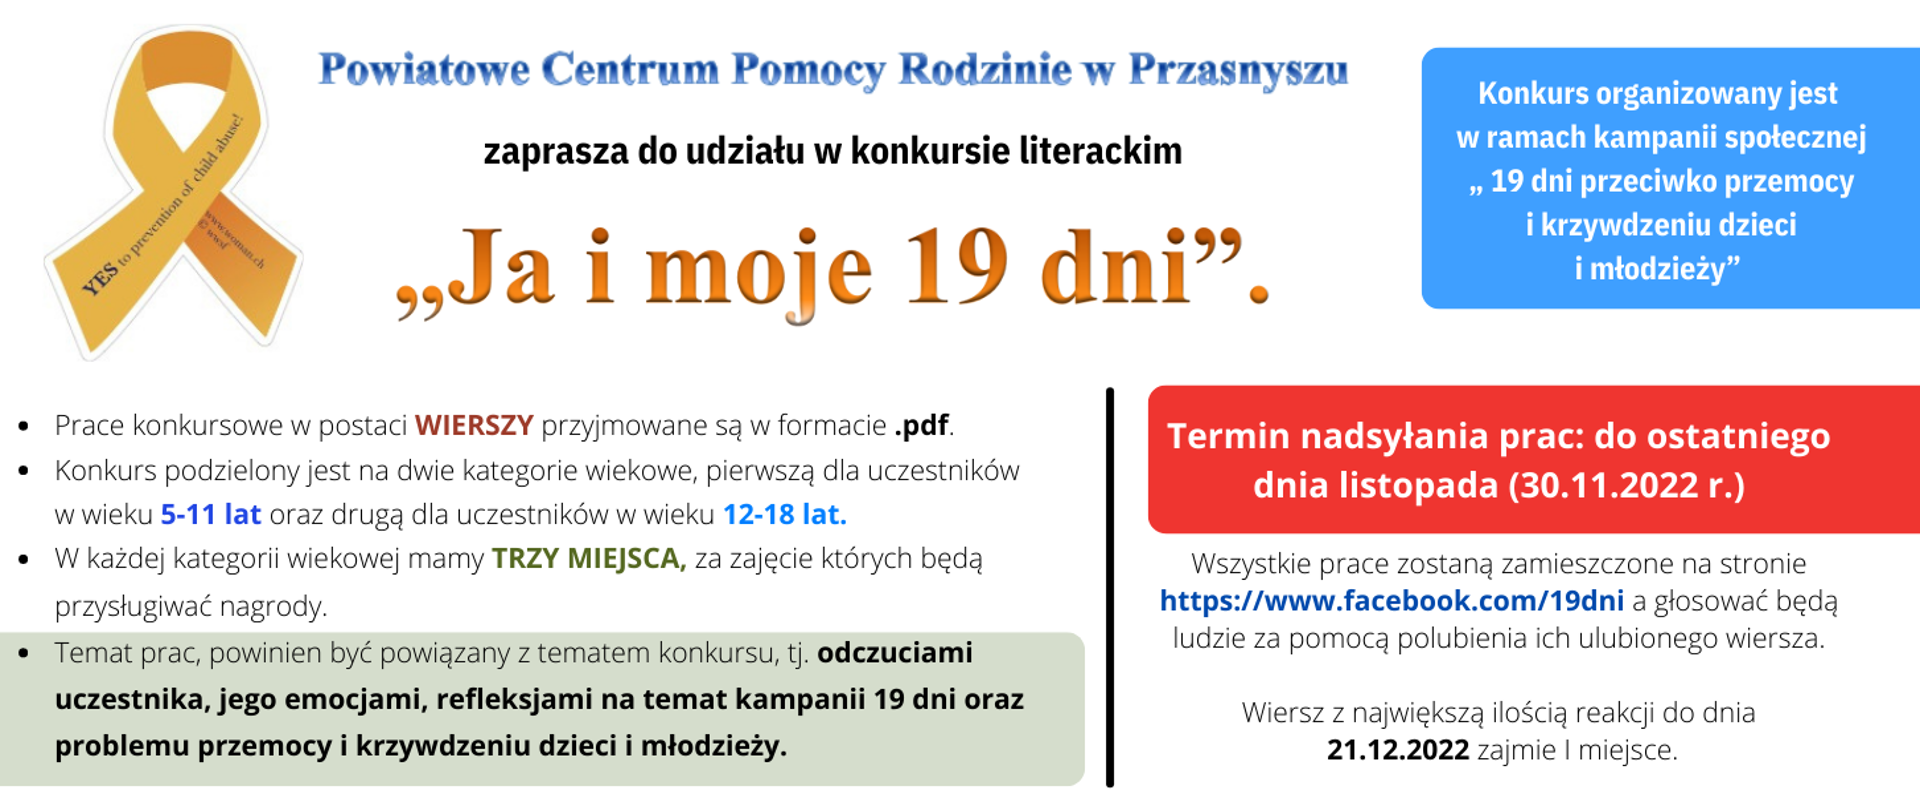 Grafika informująca o inicjatywie Powiatowego Centrum Pomocy Rodzinie w Przasnyszu, które zaprasza do udziału w konkursie literackim. Treść grafiki w artykule.